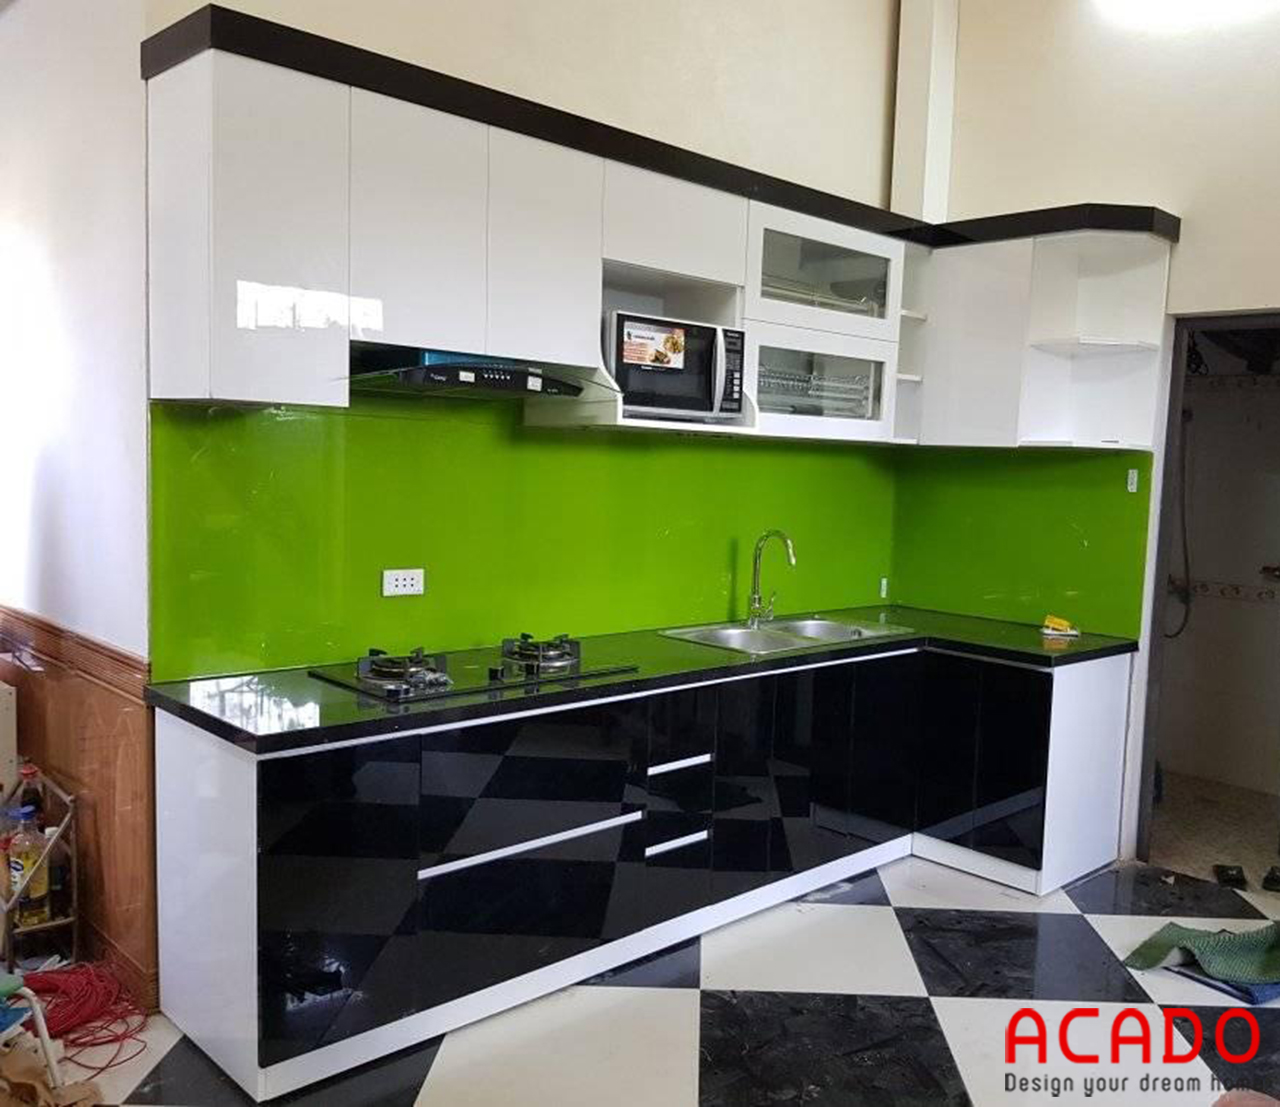 Tủ bếp acrylic trắng đen mang đến vẻ đẹp hiện đại, sang trọng cho không gian bếp